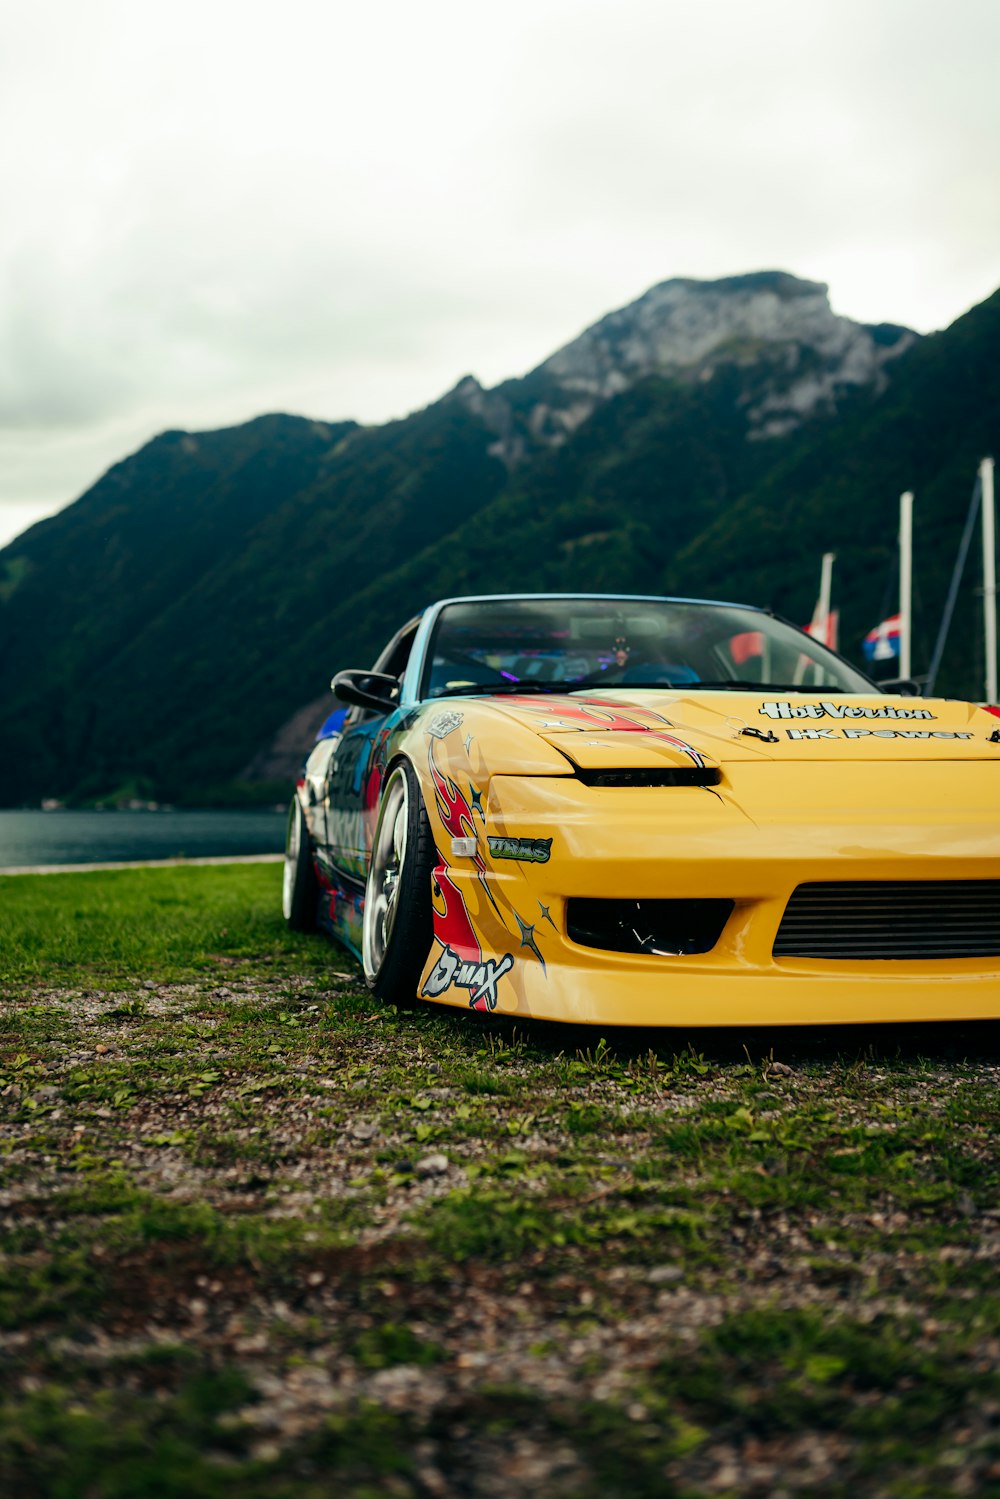 Un deportivo amarillo estacionado frente a una montaña